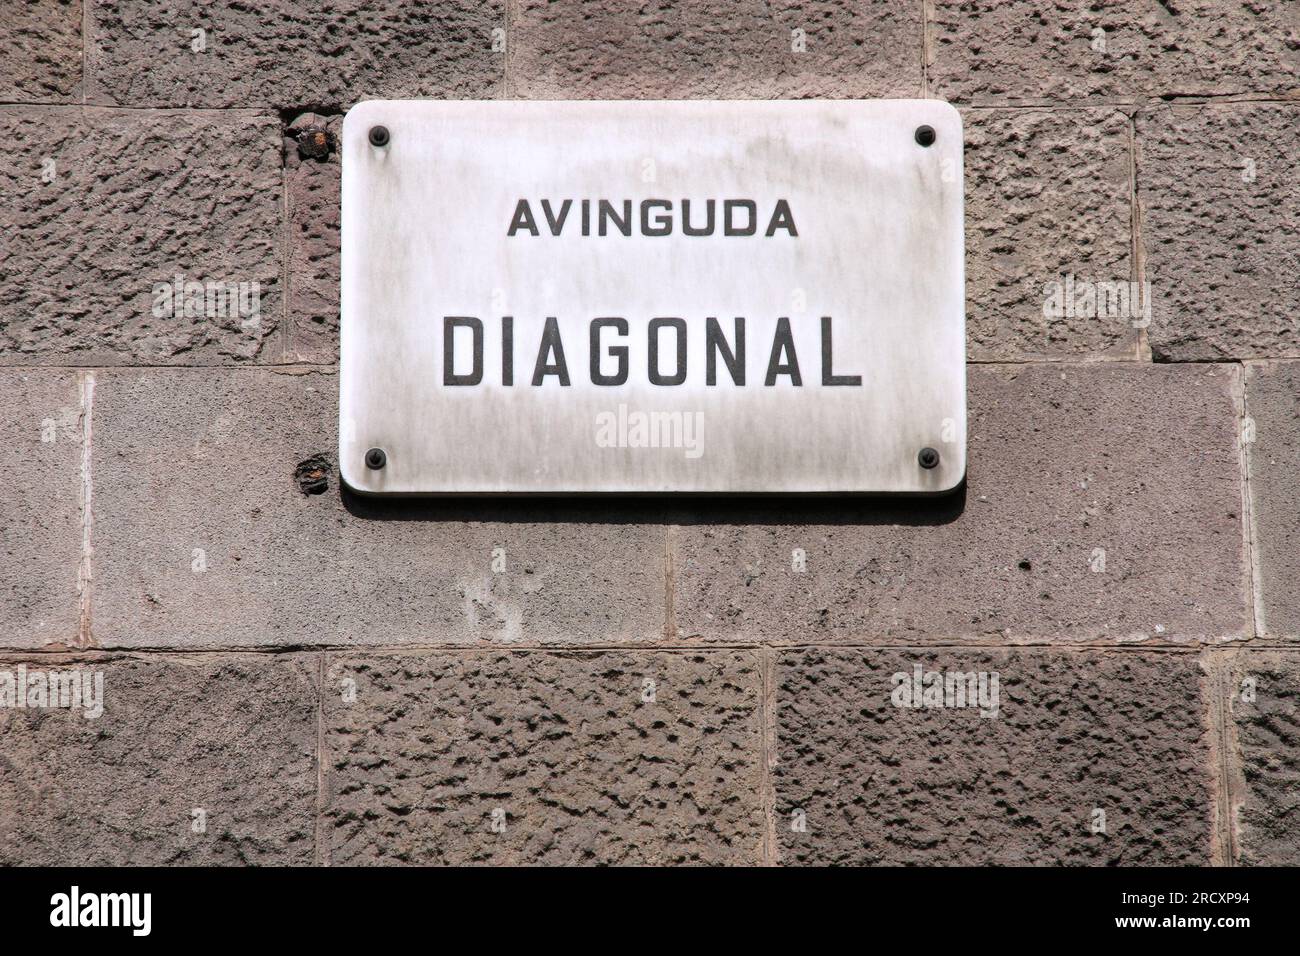 Una de las calles más importantes de Barcelona - Avinguda Diagonal (Avenida Diagonal). Señal de la calle. Foto de stock